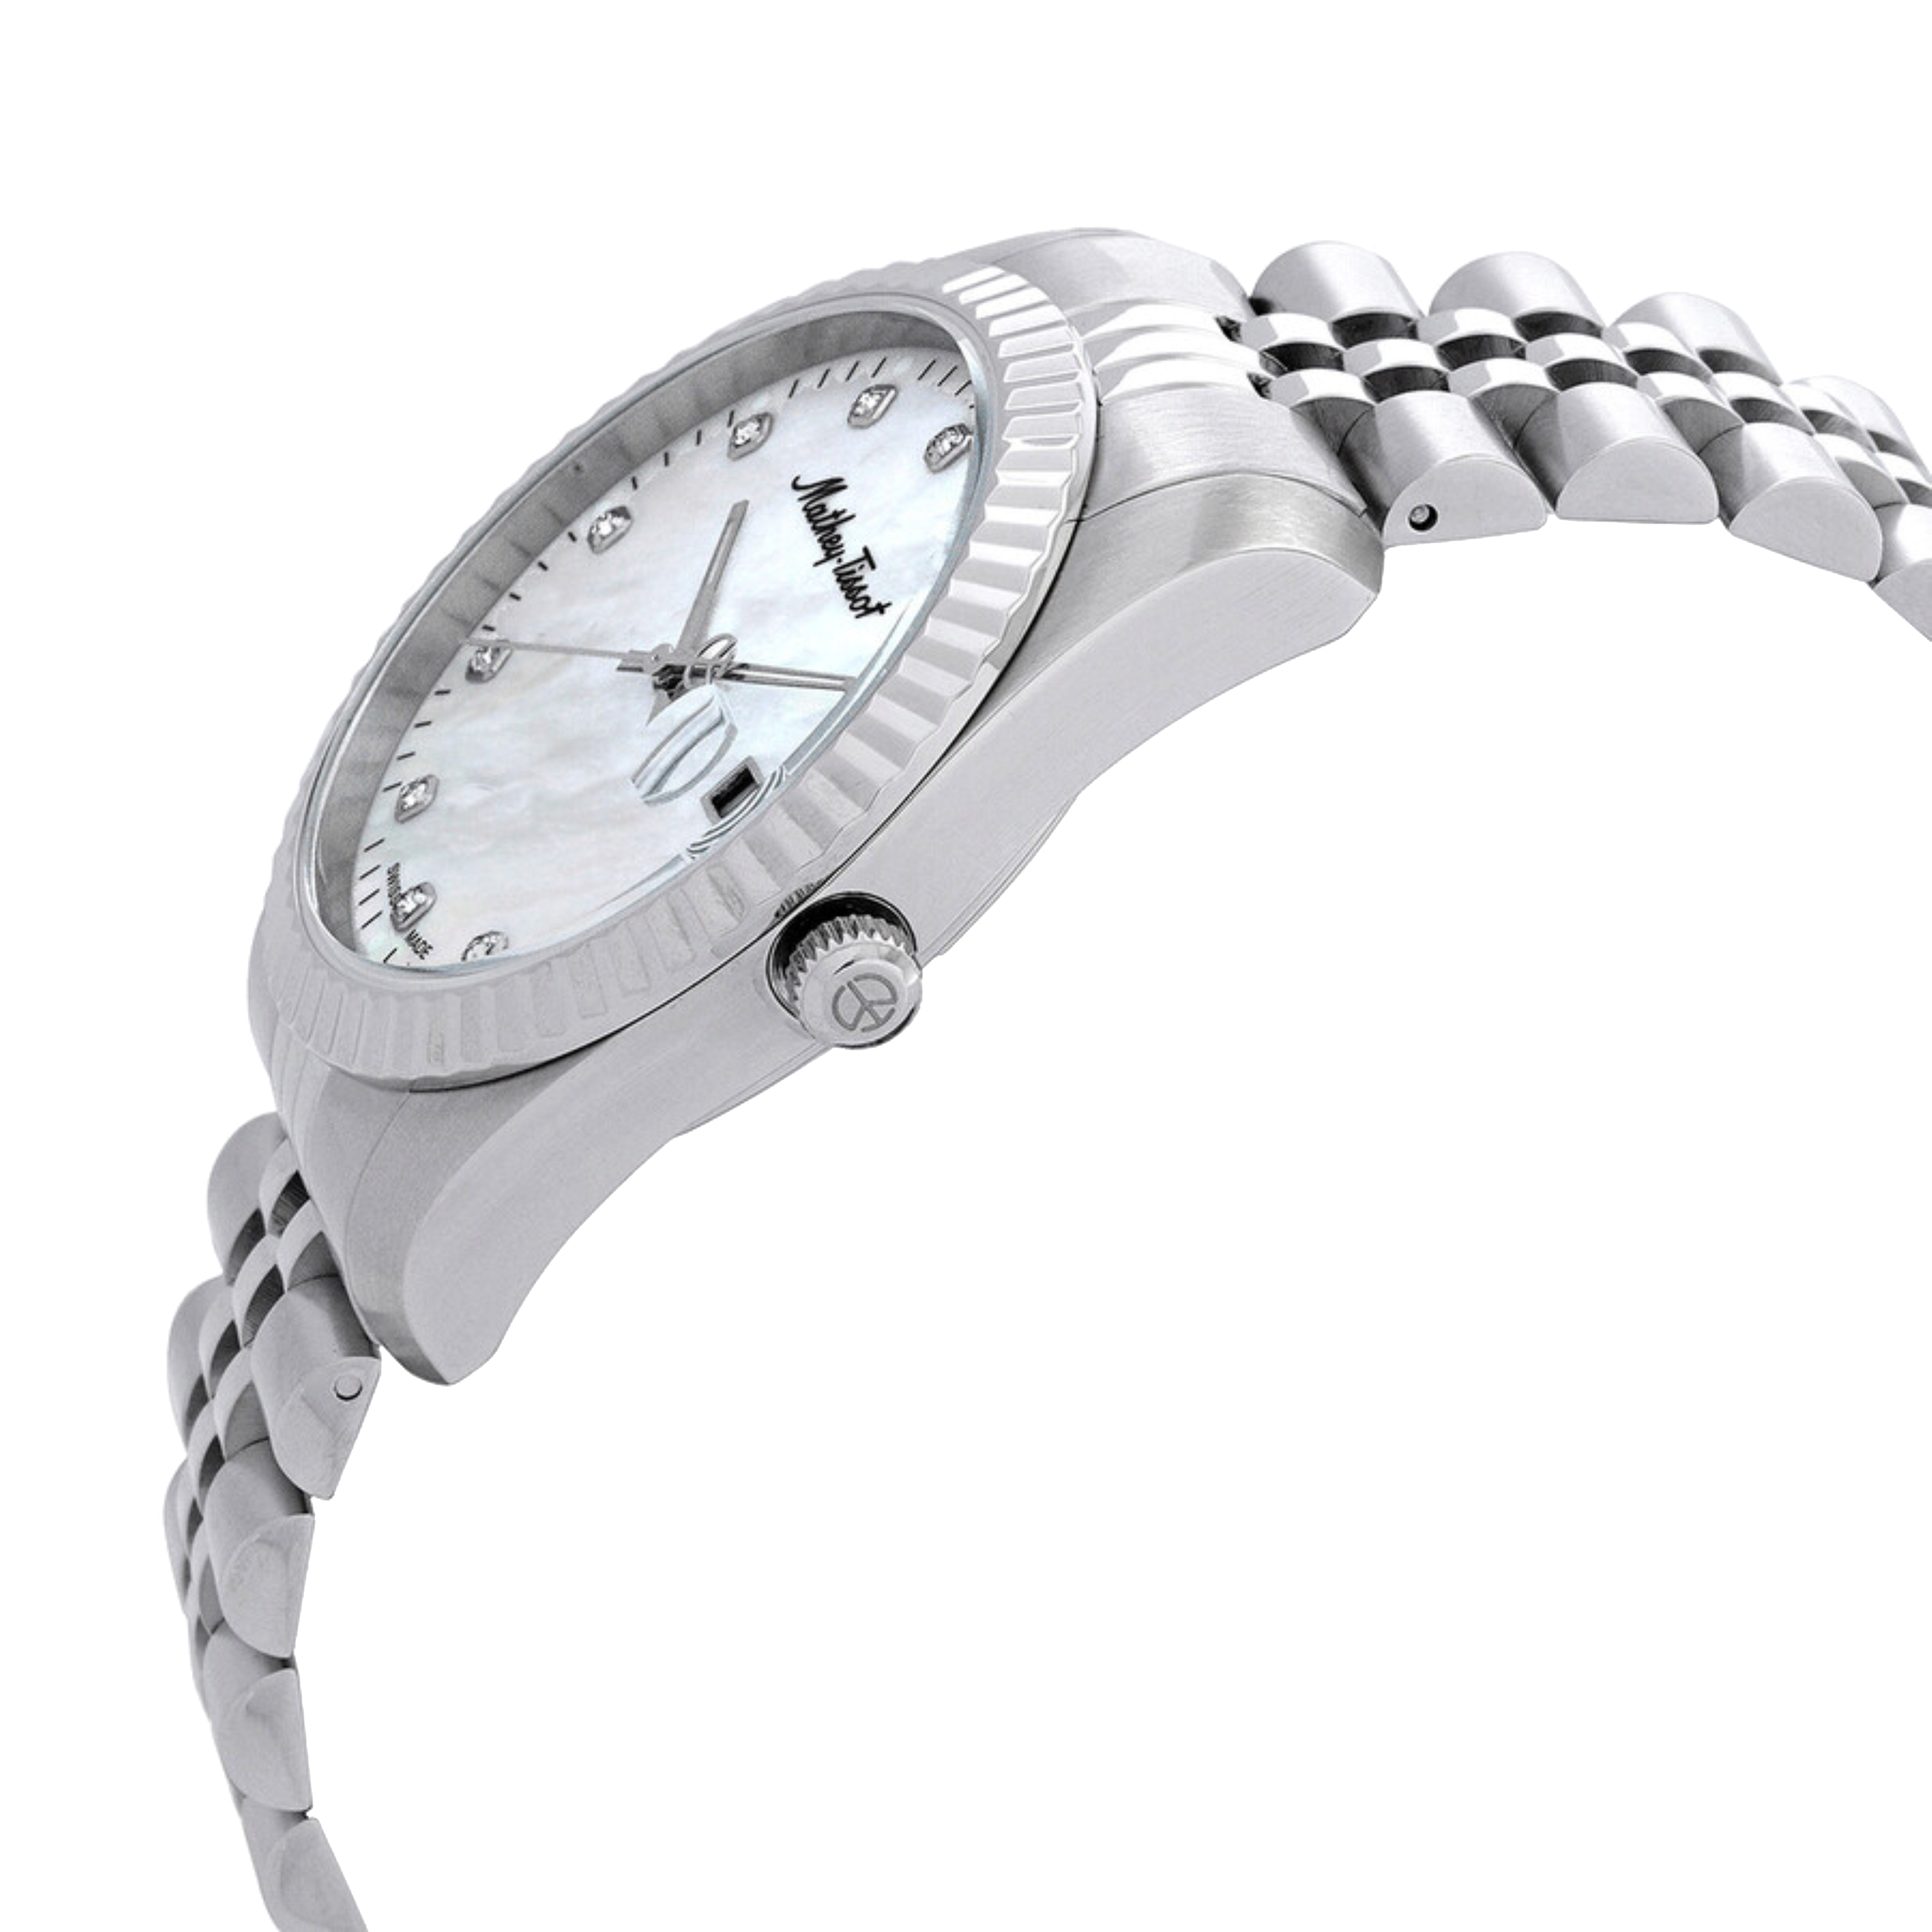 שעון יד לגבר Mathey Tissot H710AI 40mm צבע כסף/ספרות זרקונים/תאריך - אחריות לשנתיים